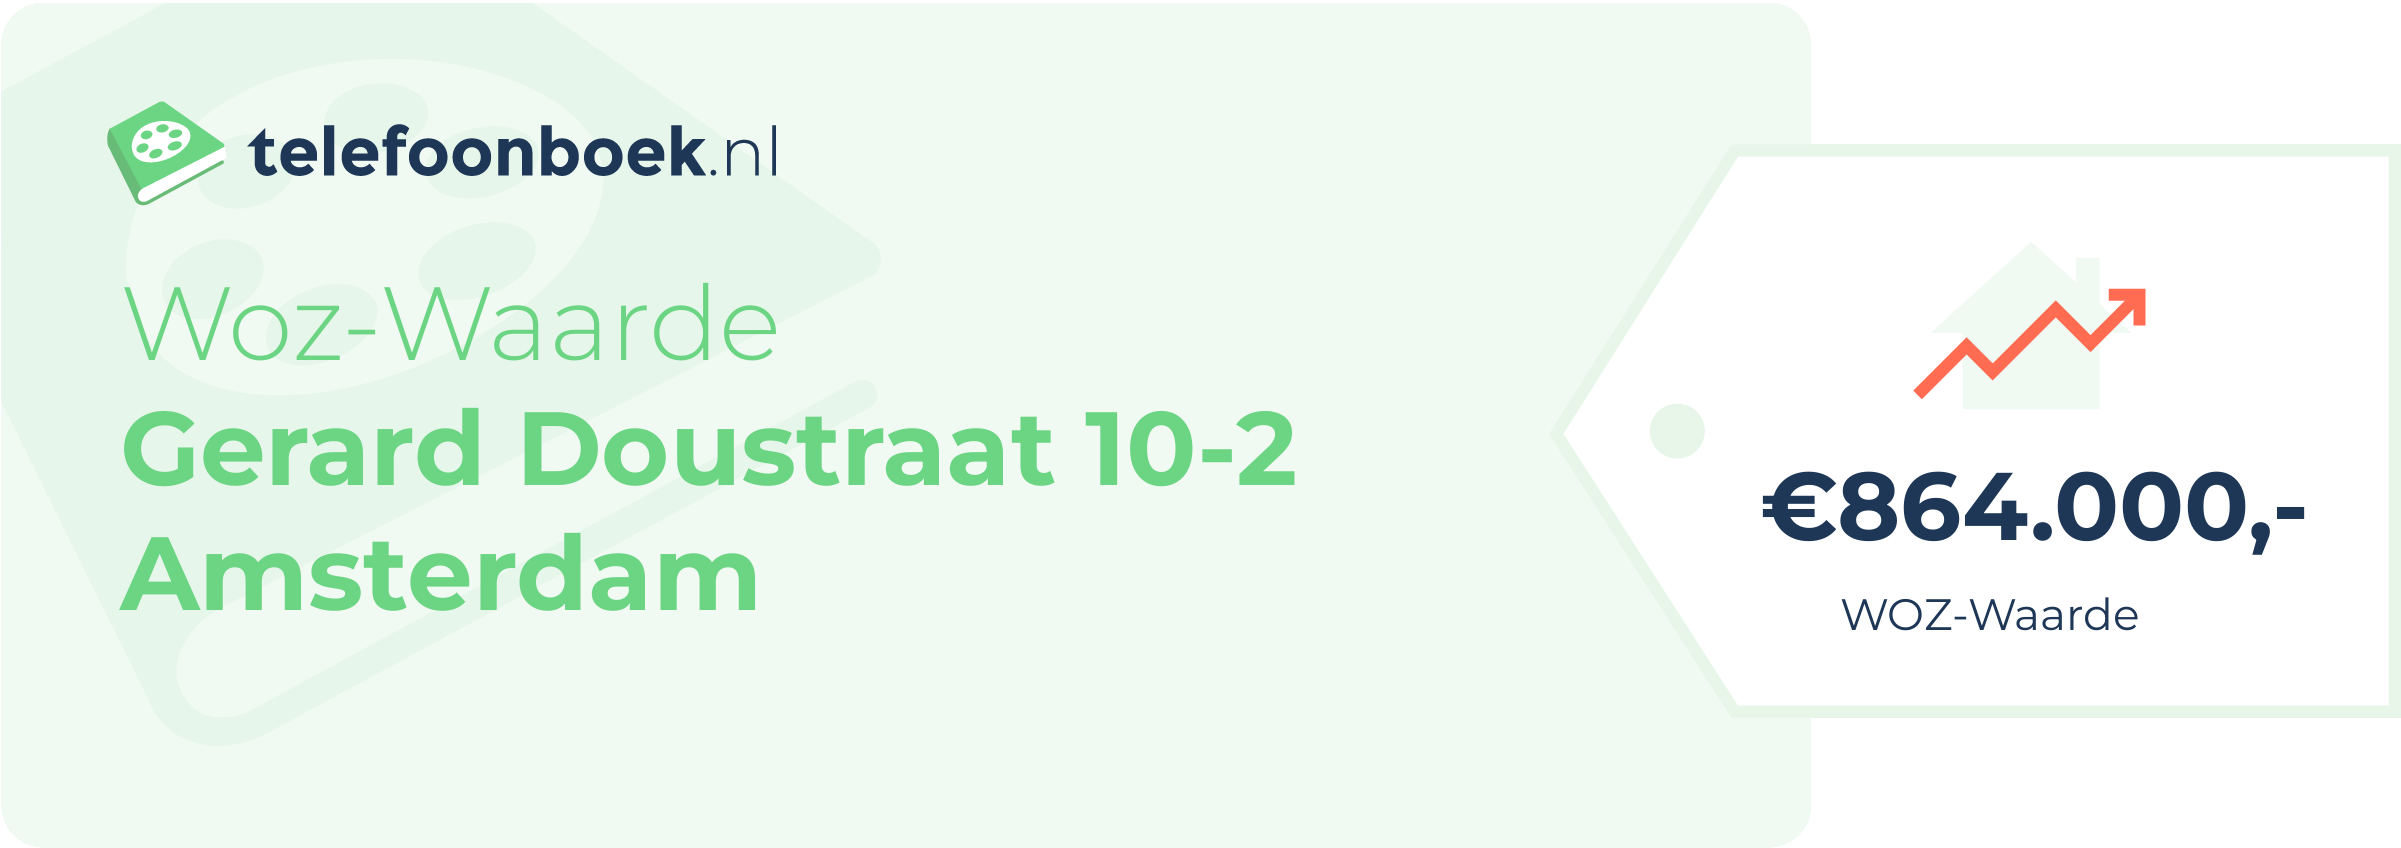 WOZ-waarde Gerard Doustraat 10-2 Amsterdam